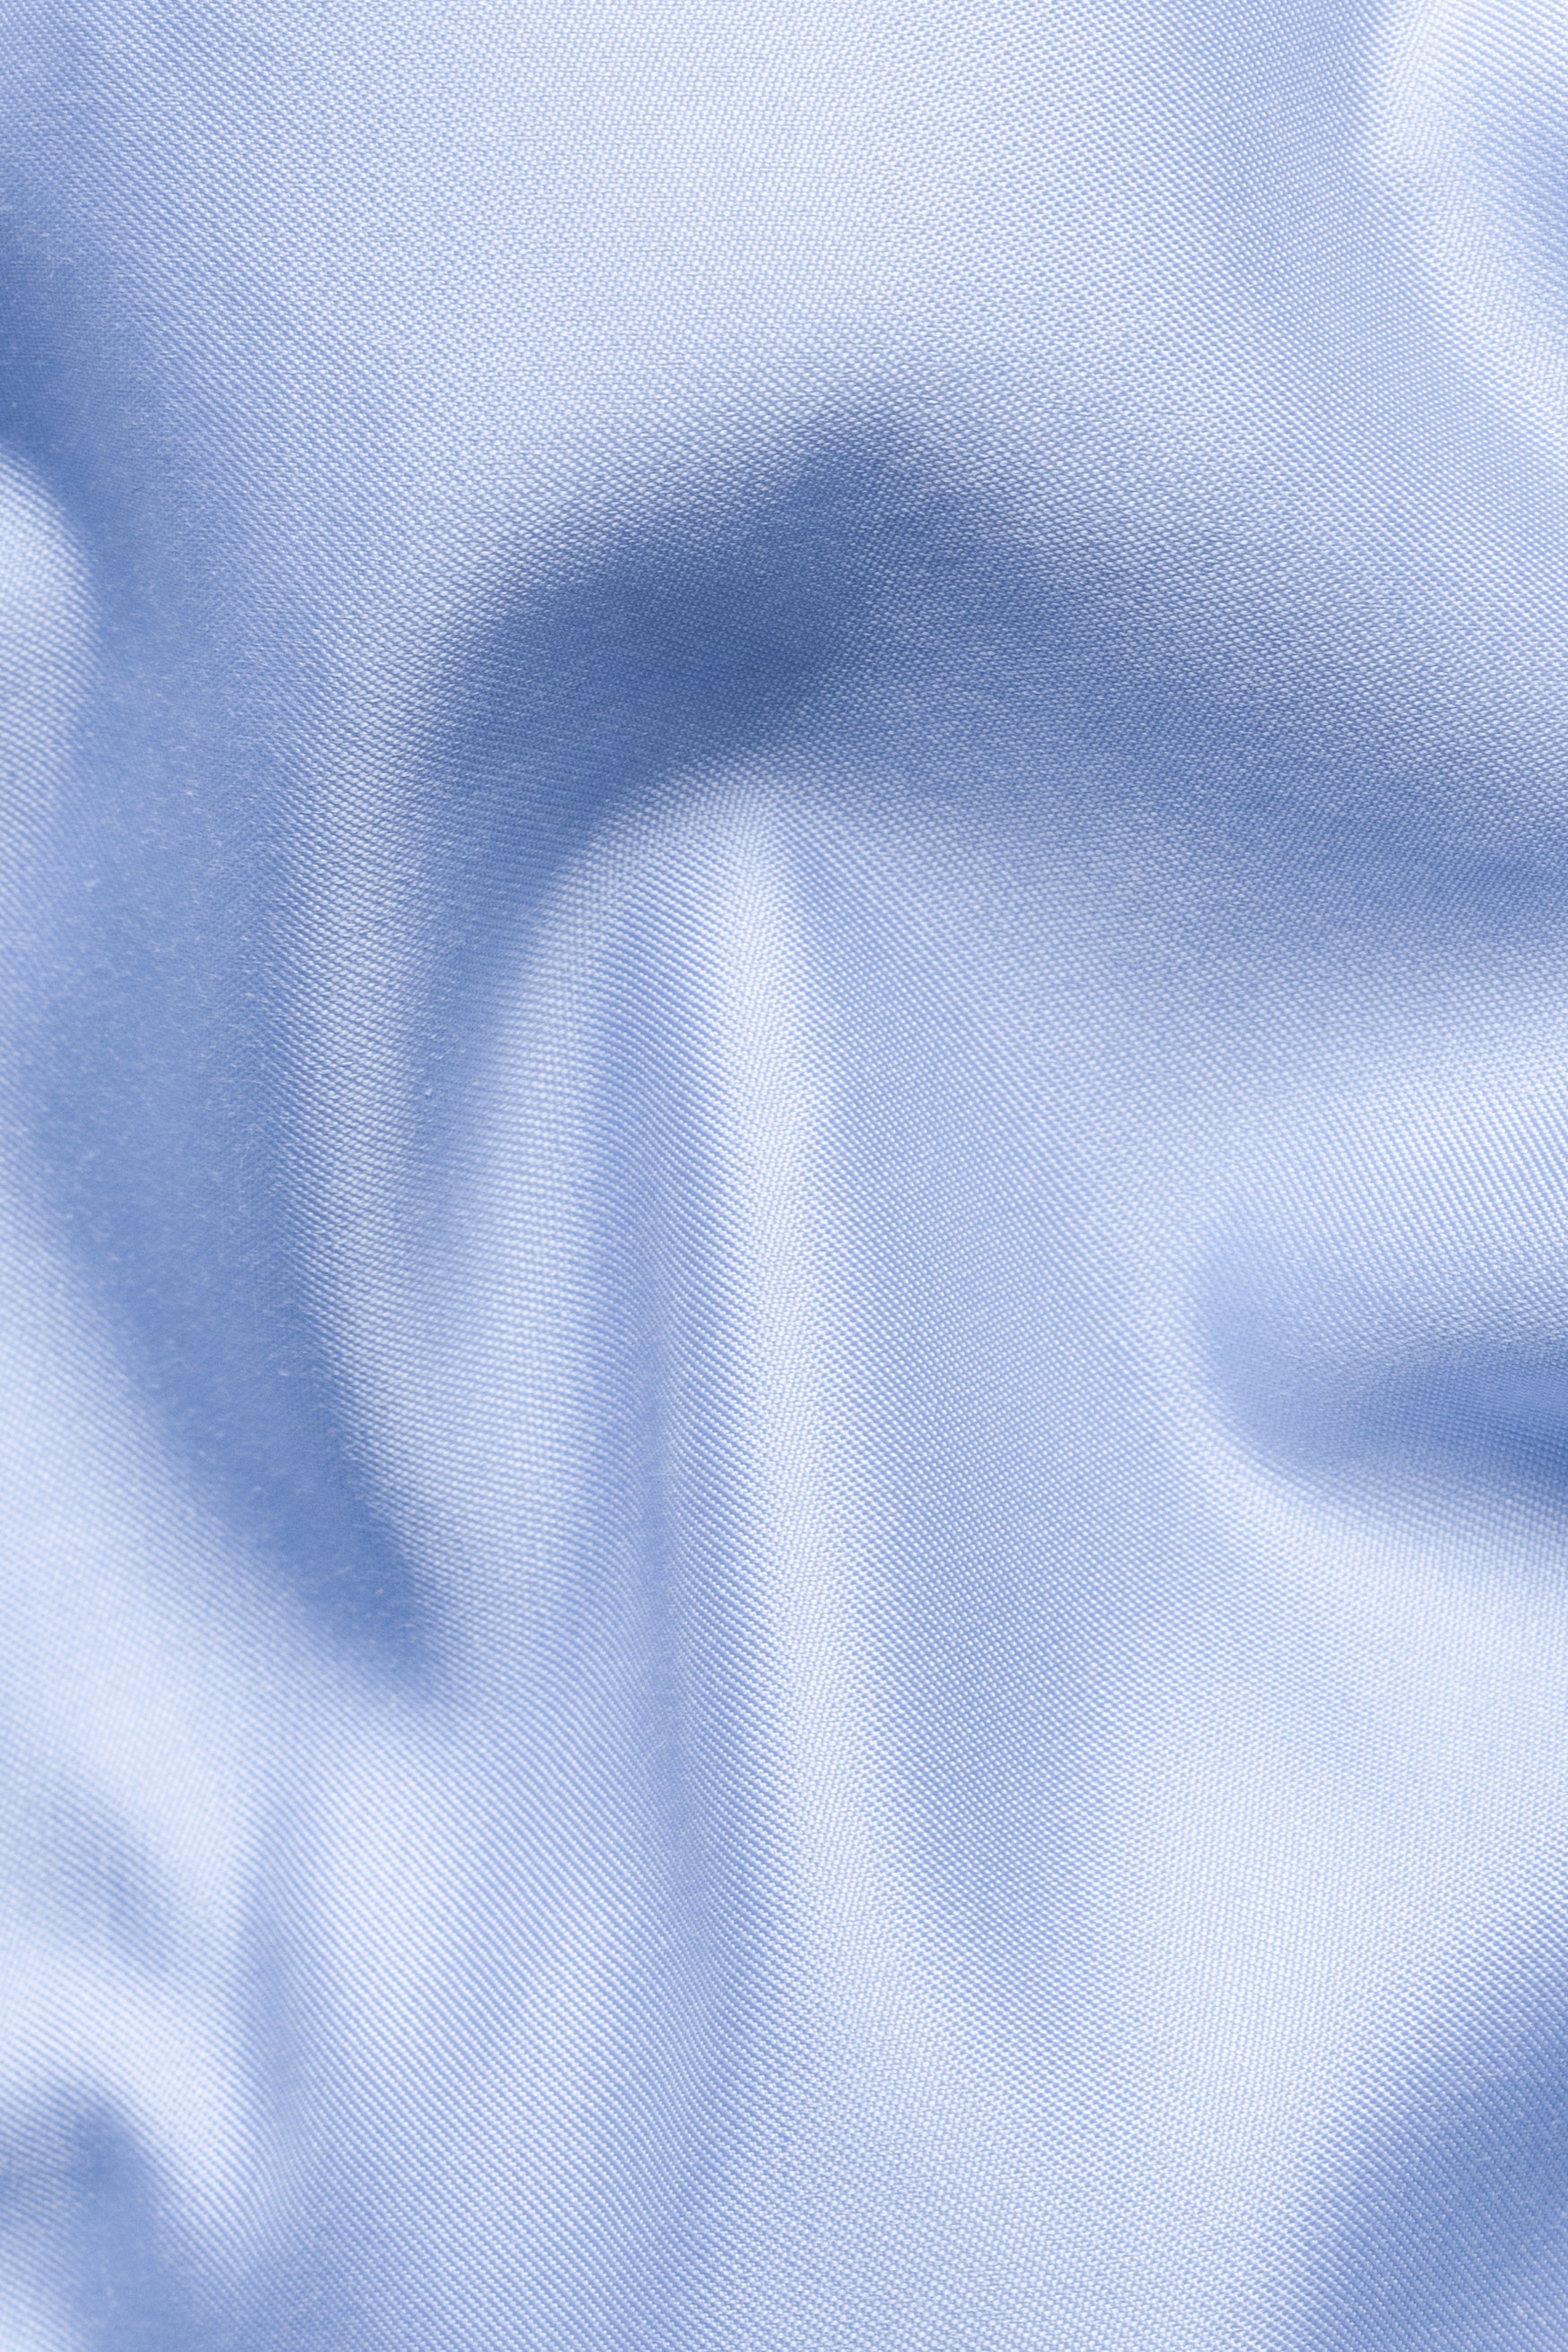 Wistful Blue Subtle Sheen Super Soft Premium Cotton Short